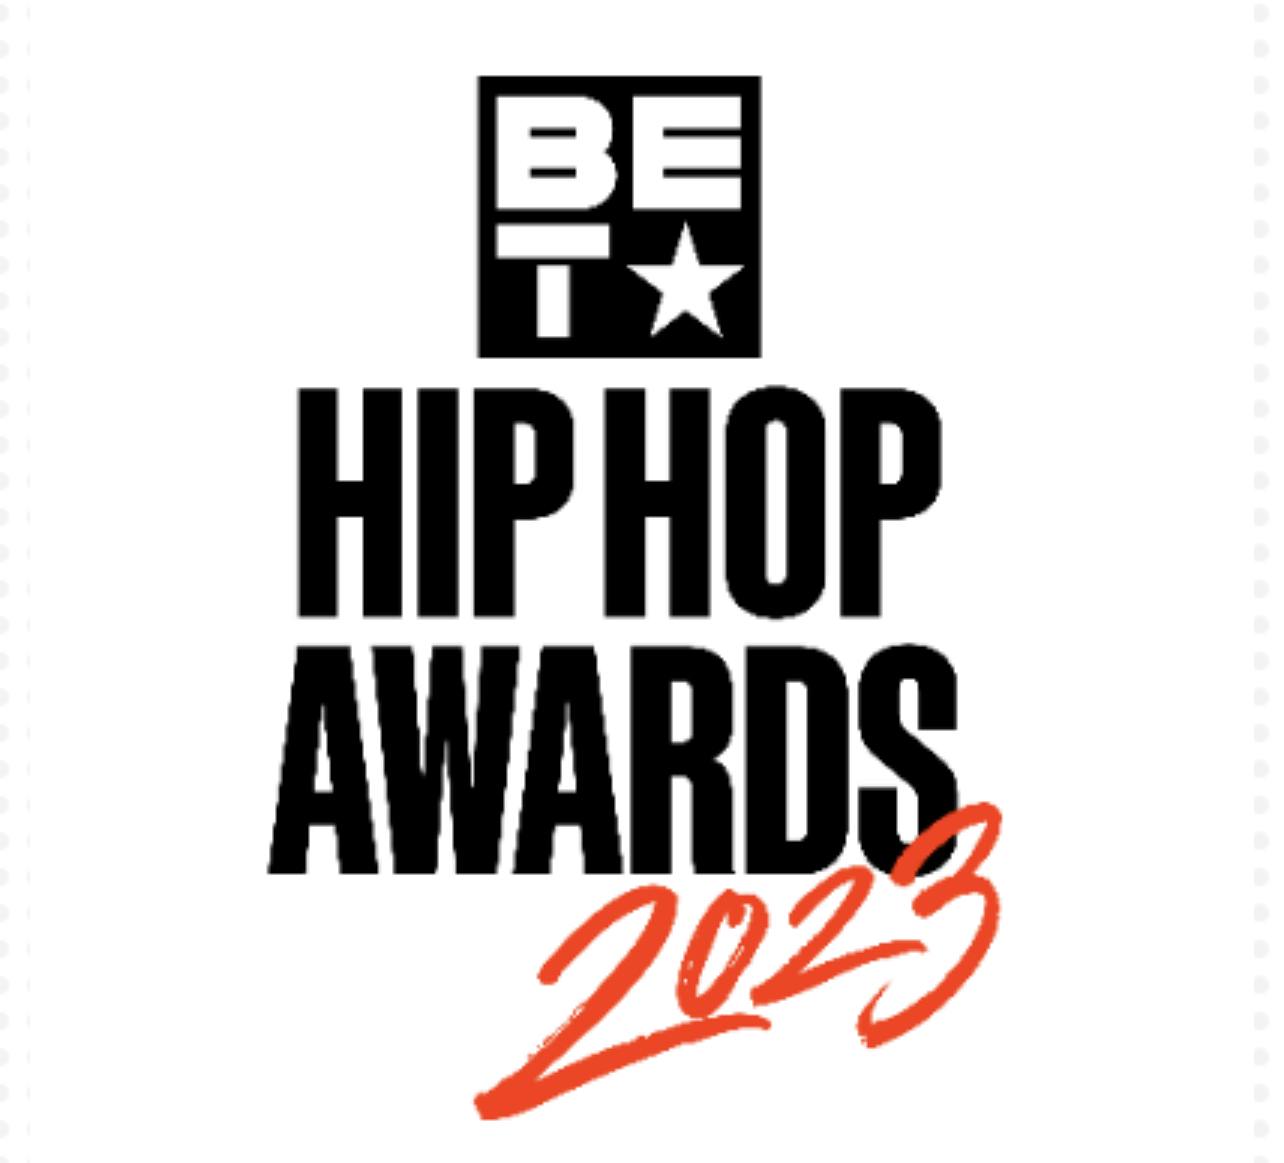 Bet Hip Hop Awards